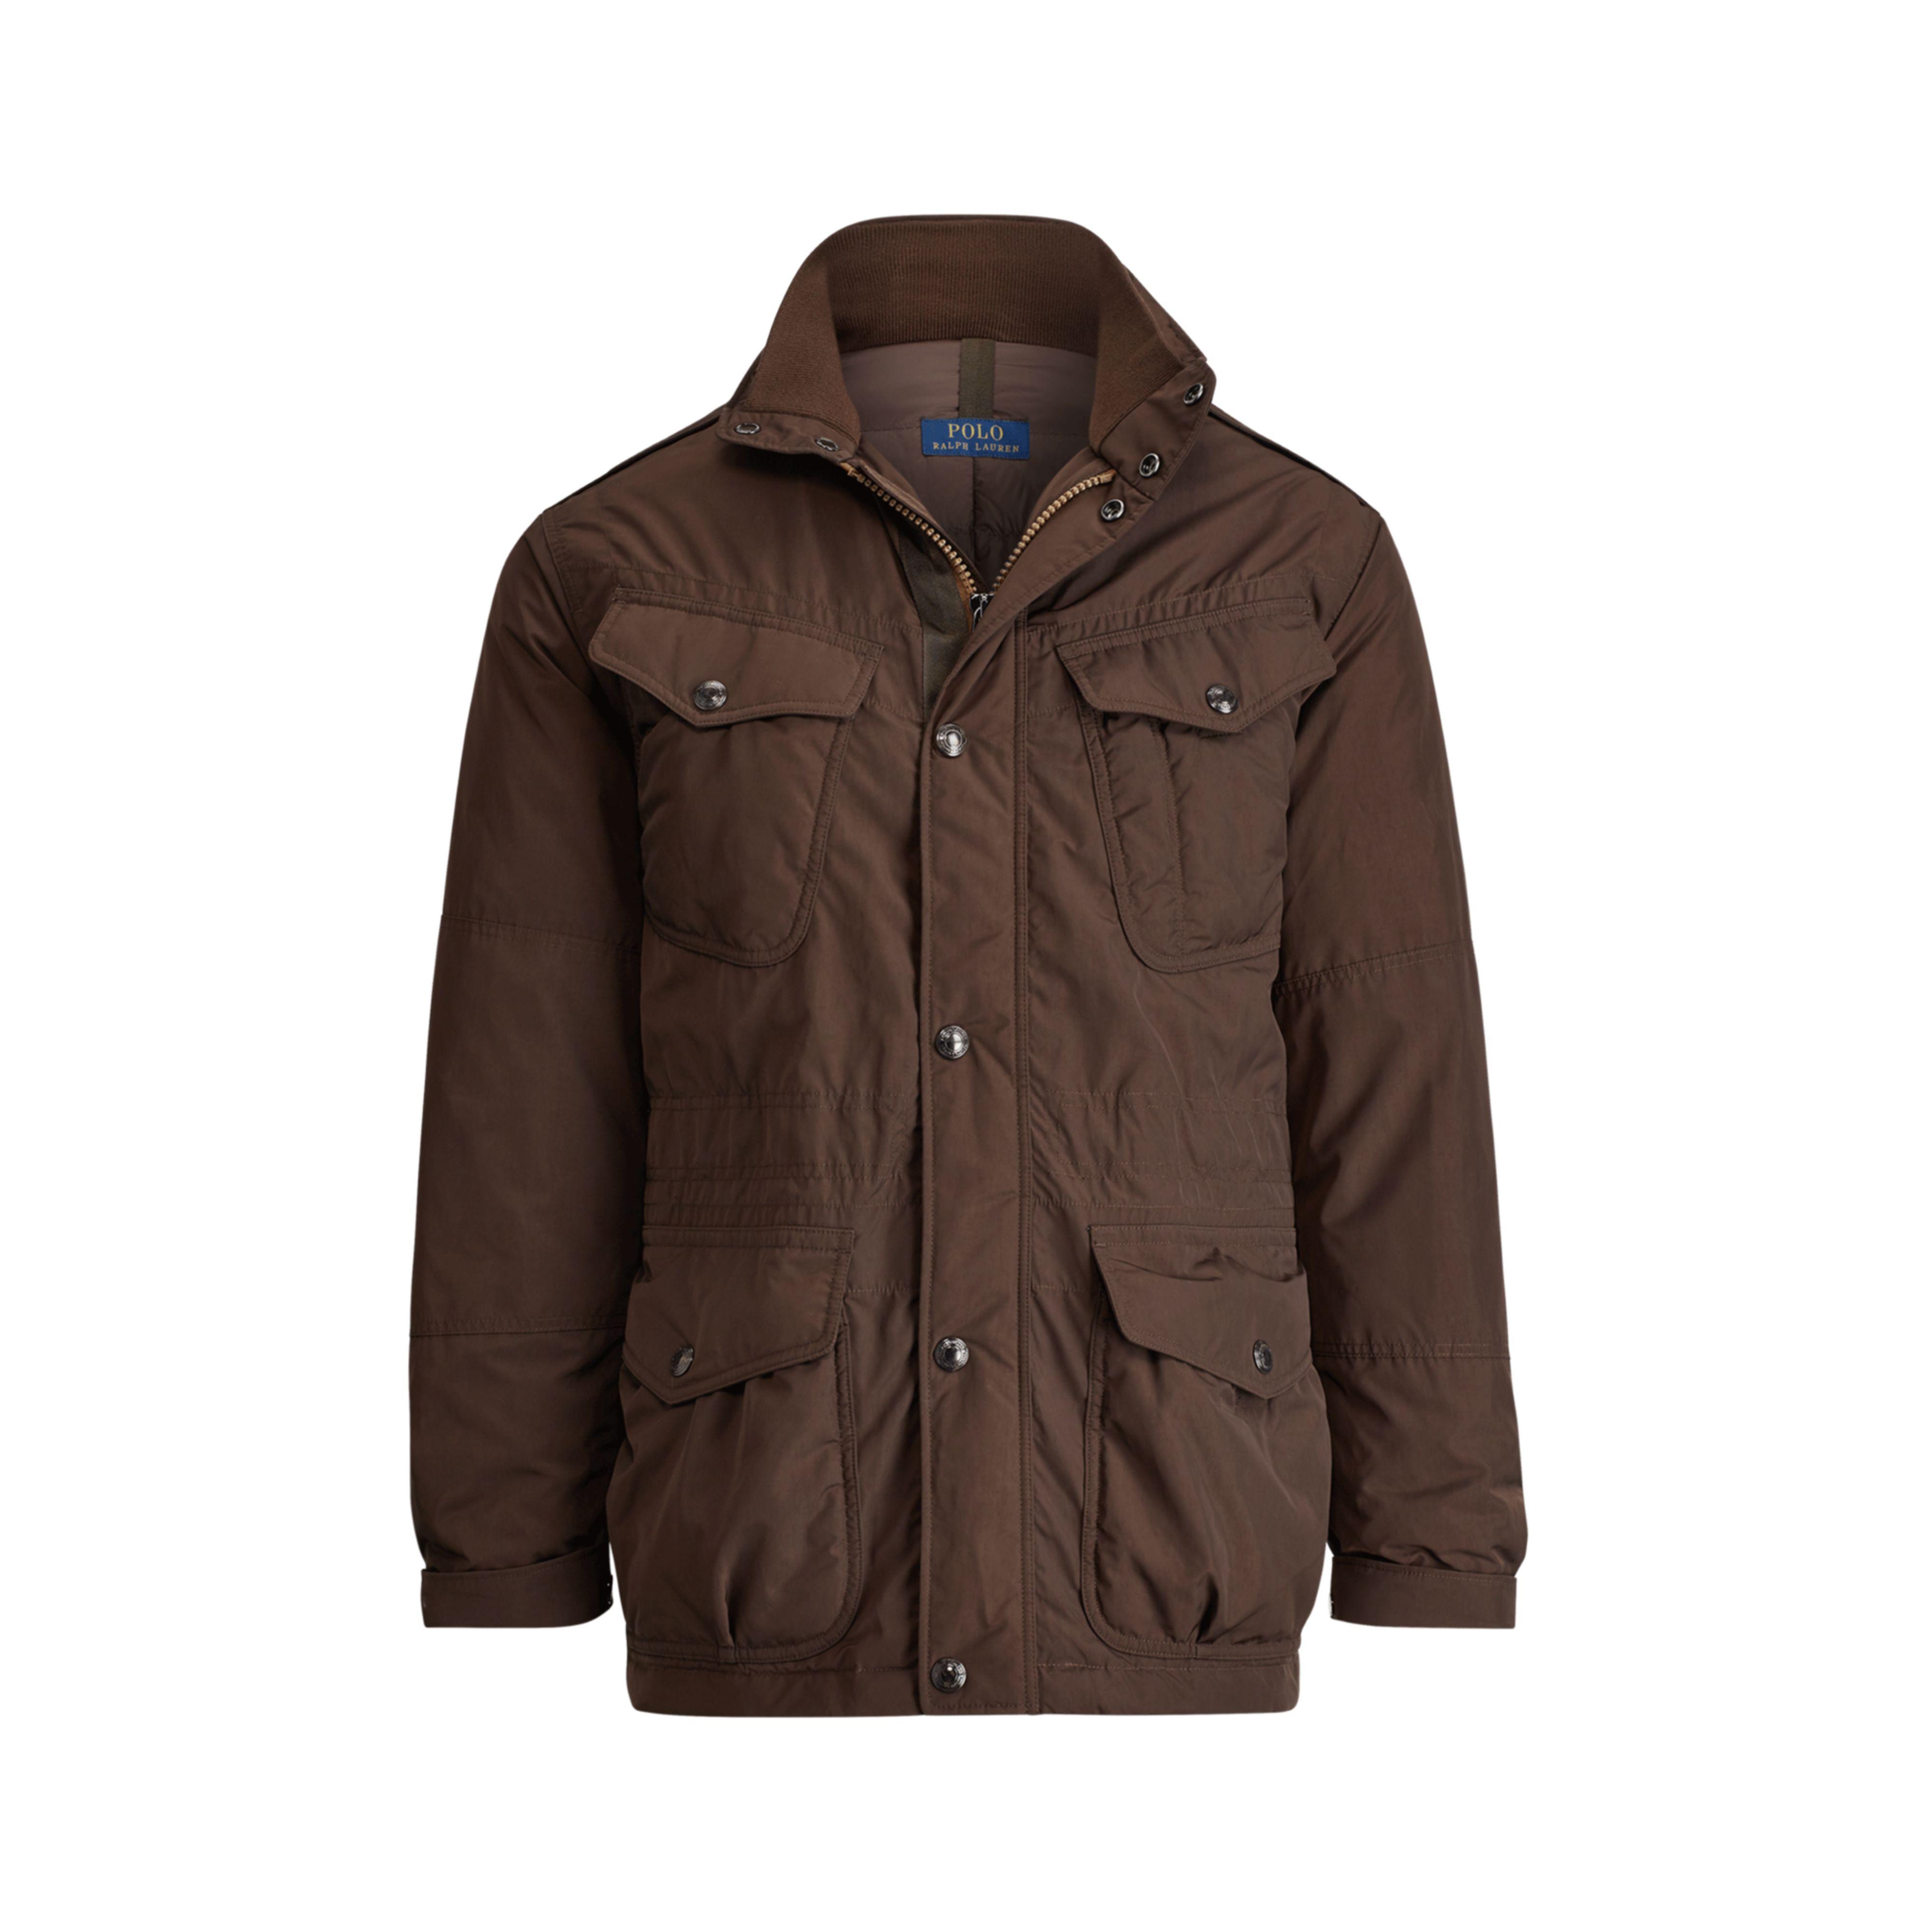 Lyst - Polo ralph lauren Water-repellent Field Jacket in Brown for Men